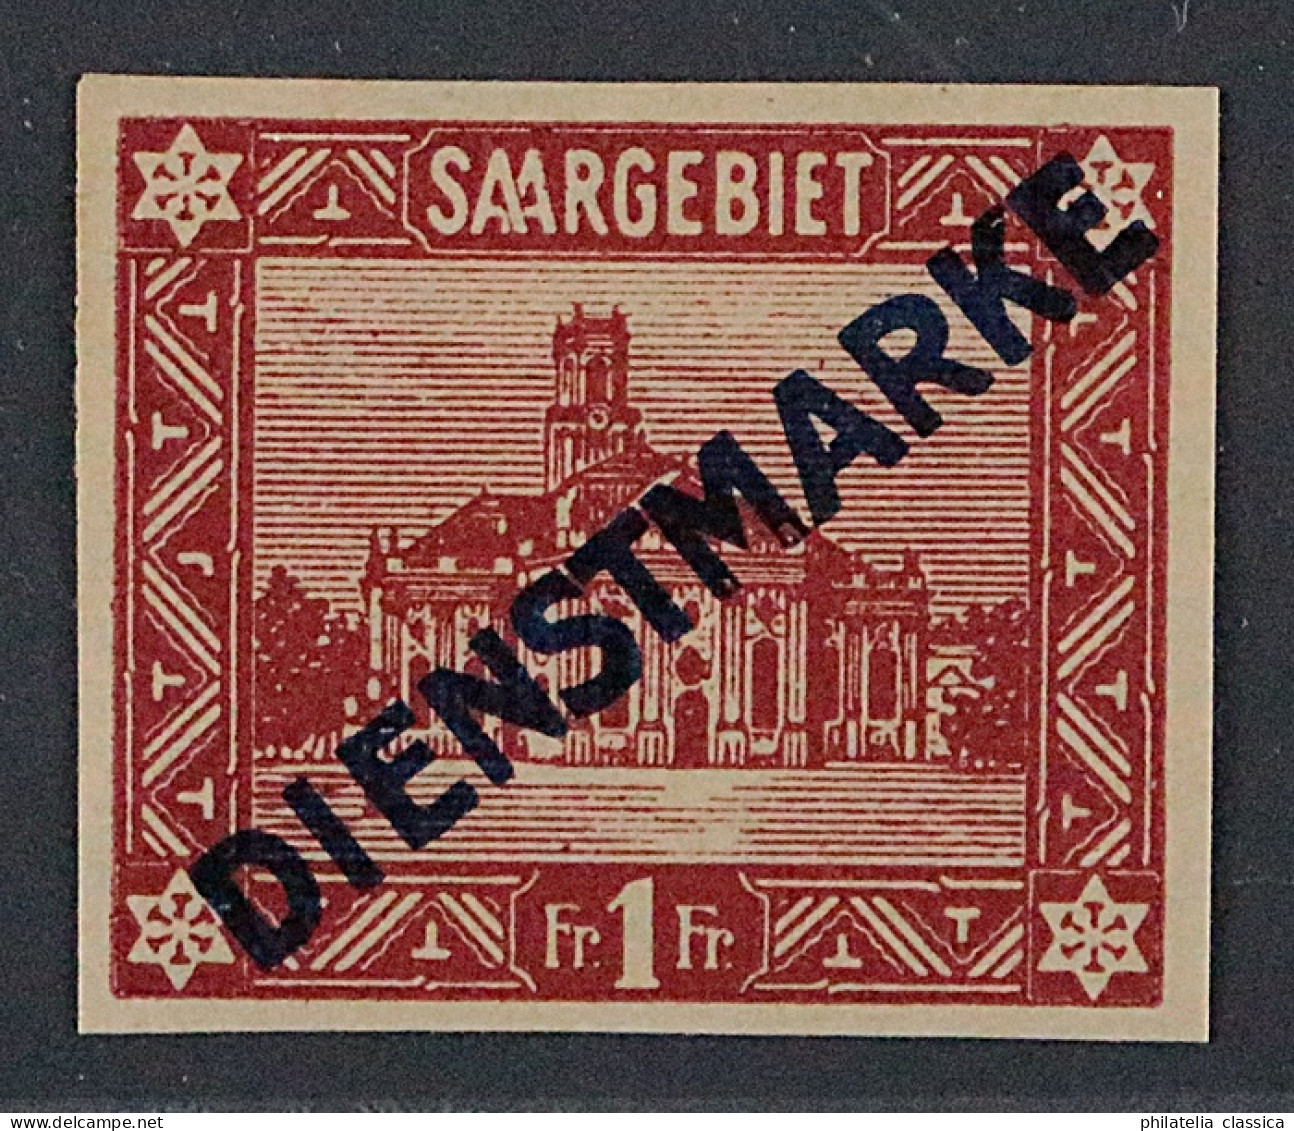 SAAR Dienst  11 I U *  1 Fr. UNGEZÄHNT Aufdruck Type I, Ungebraucht, KW 850,- € - Unused Stamps